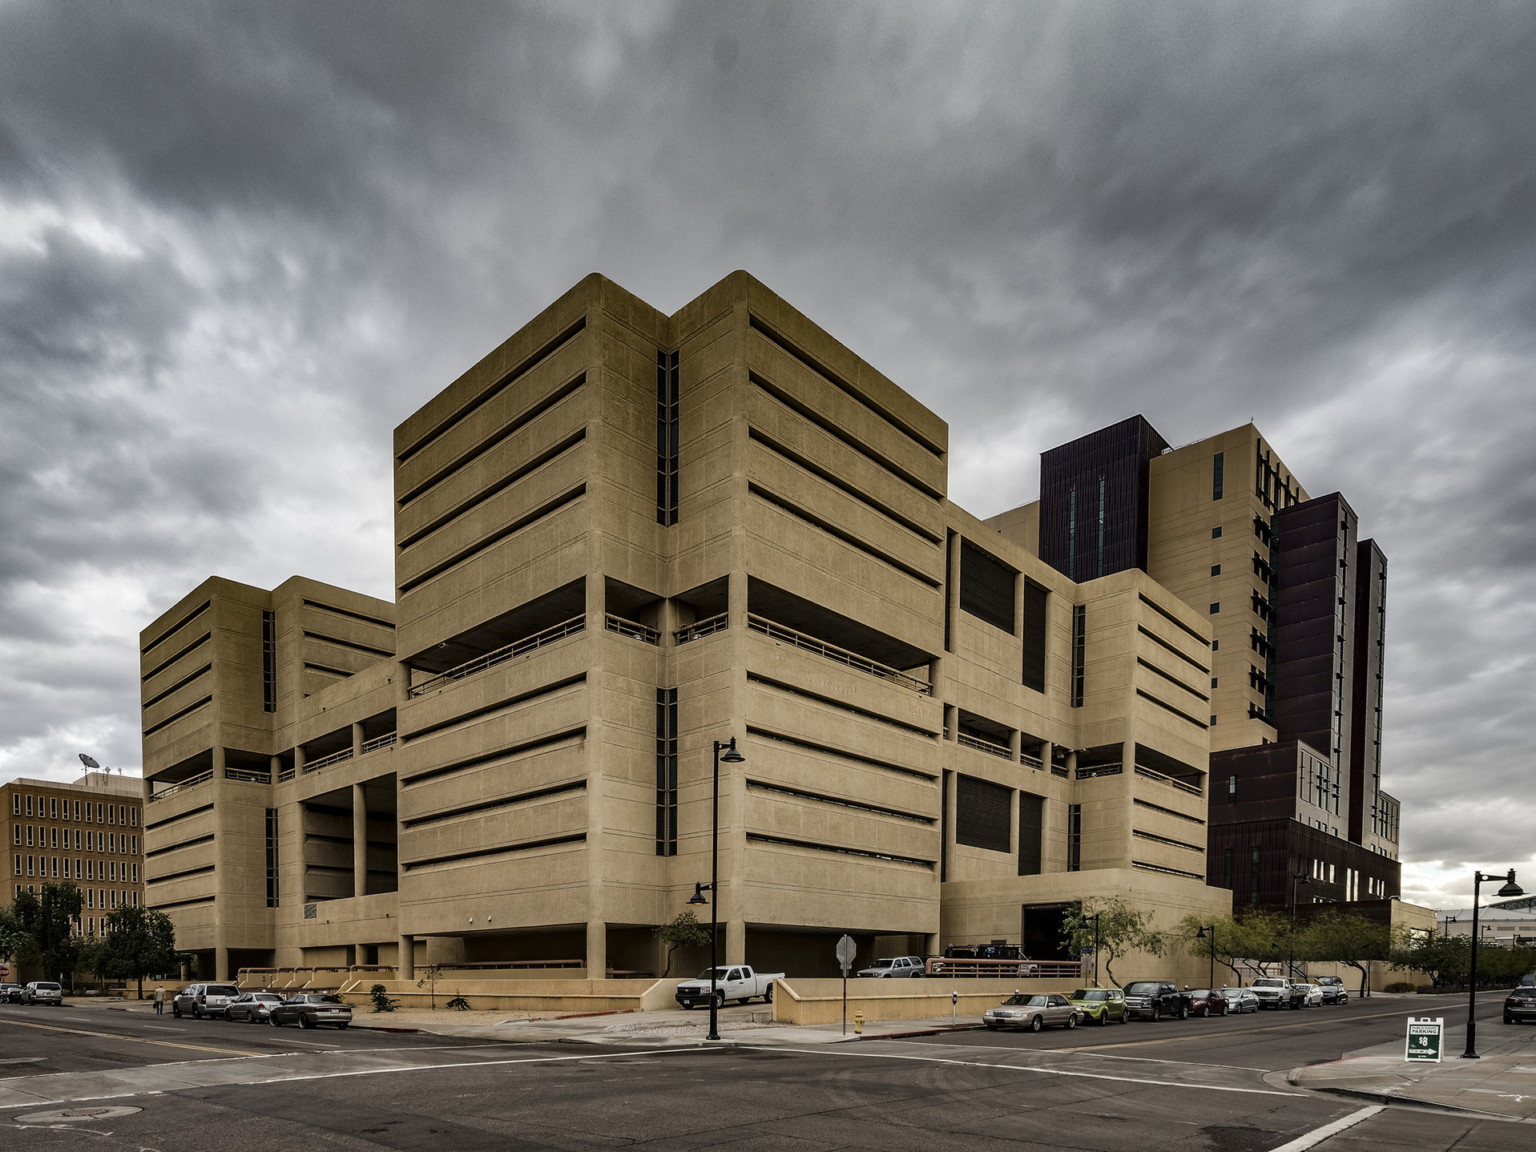 beige brutalist concrete asymmetrical building against a cloudy sky